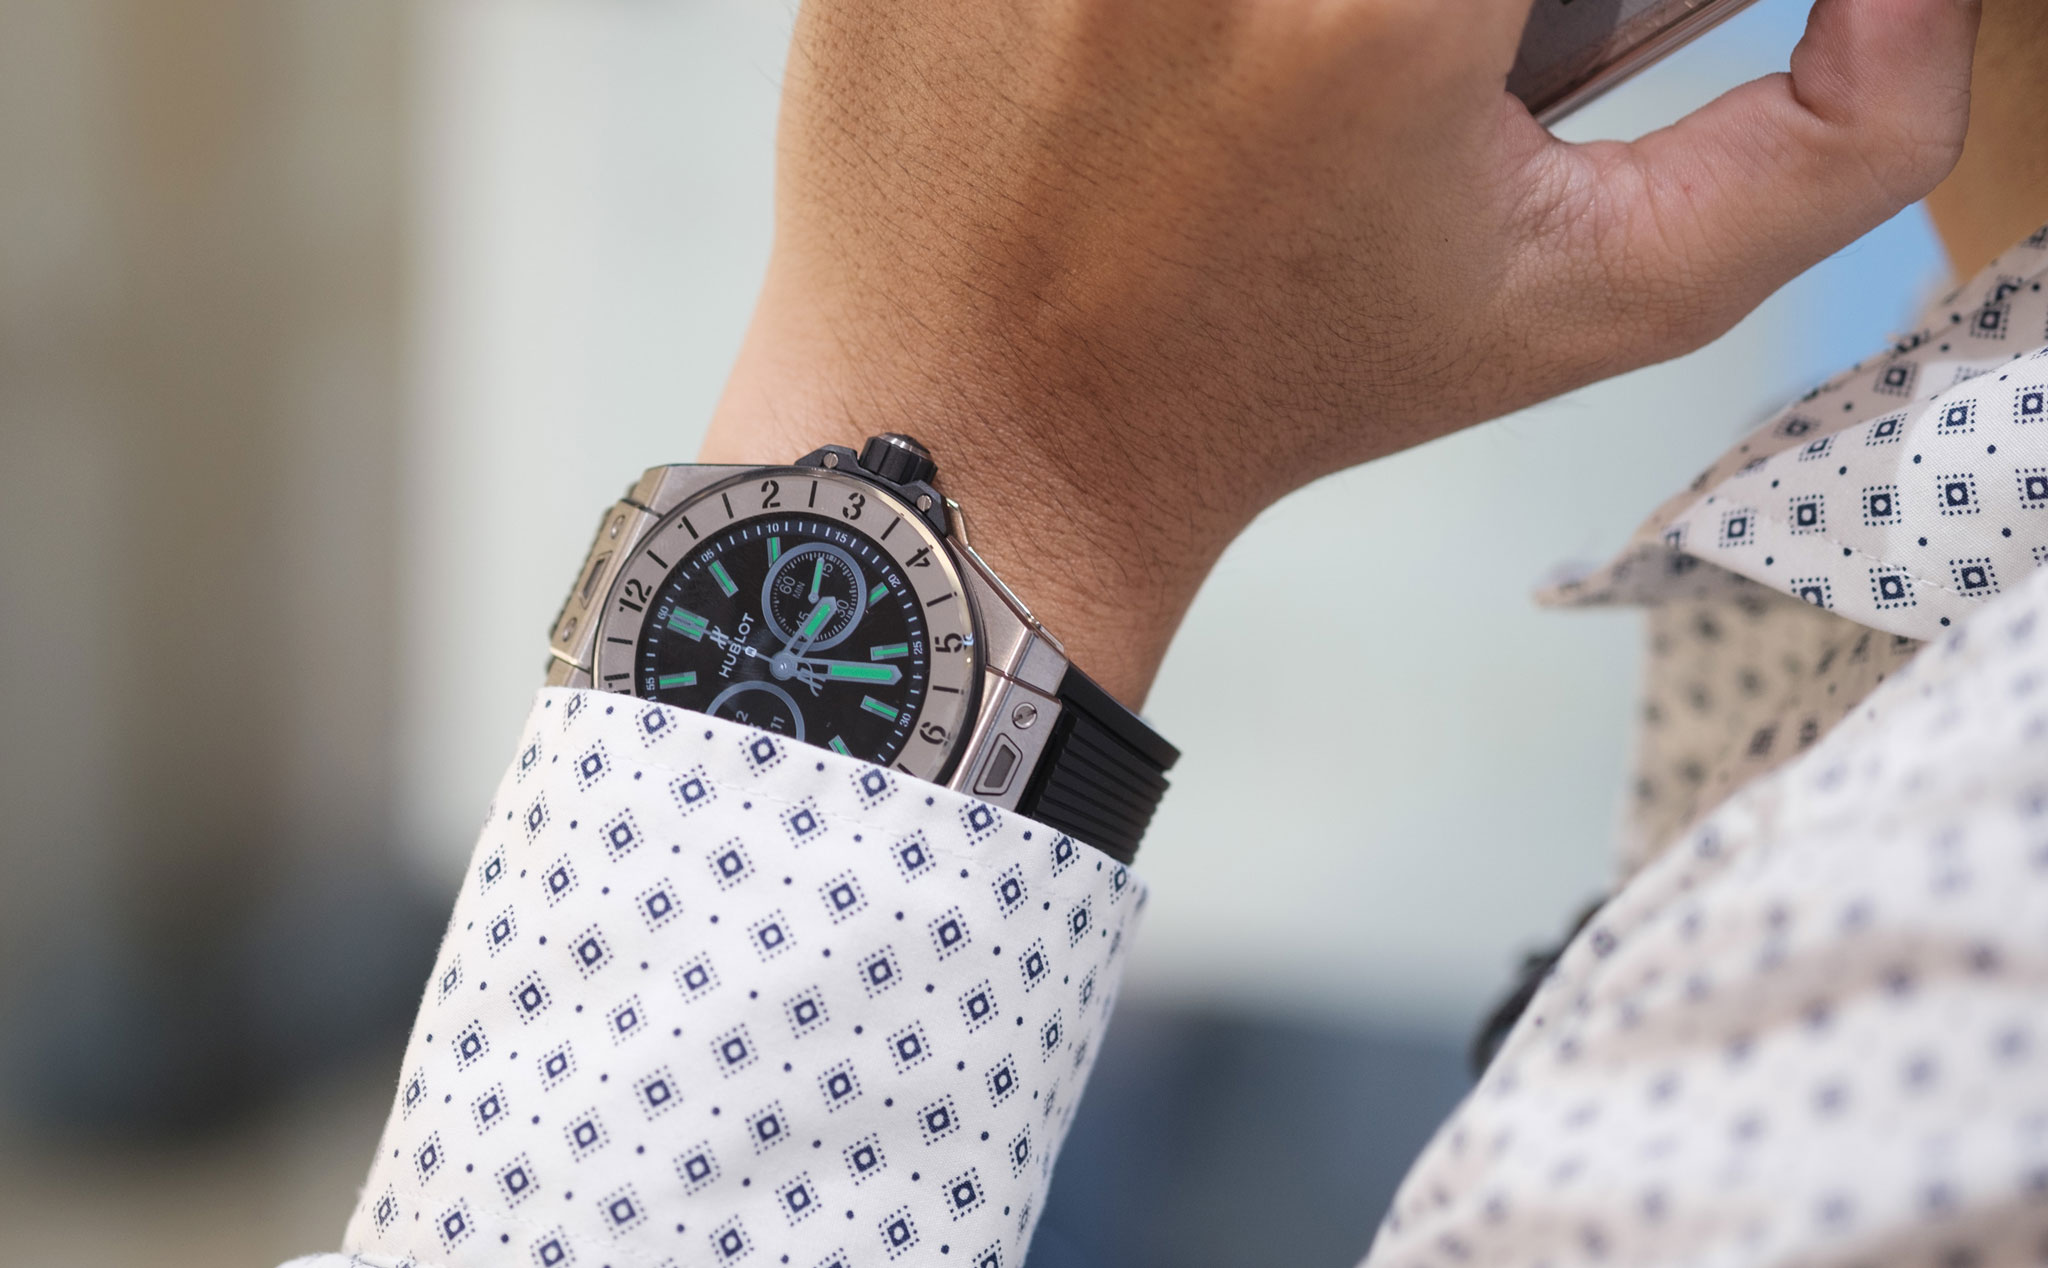 Trên tay Hublot Bigbang e: smartwatch đắt giá, đồng hồ cao cấp 133 triệu, nhiều tùy chọn mặt dial